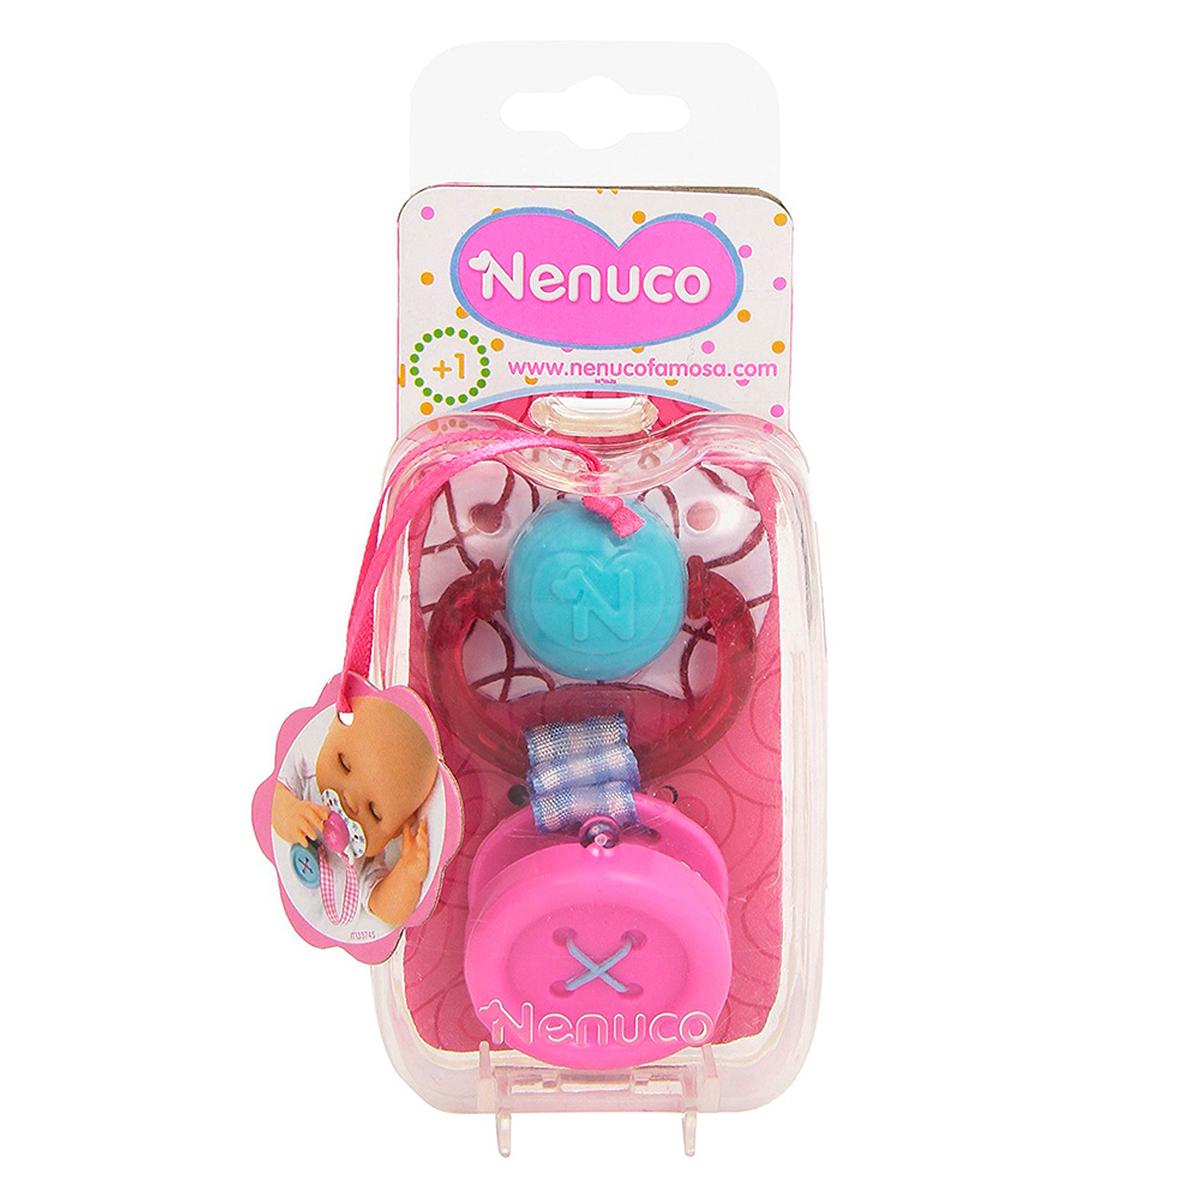 Nenuco Muñeco (varios modelos) Nenuco Accesorios | Toys"R"Us España